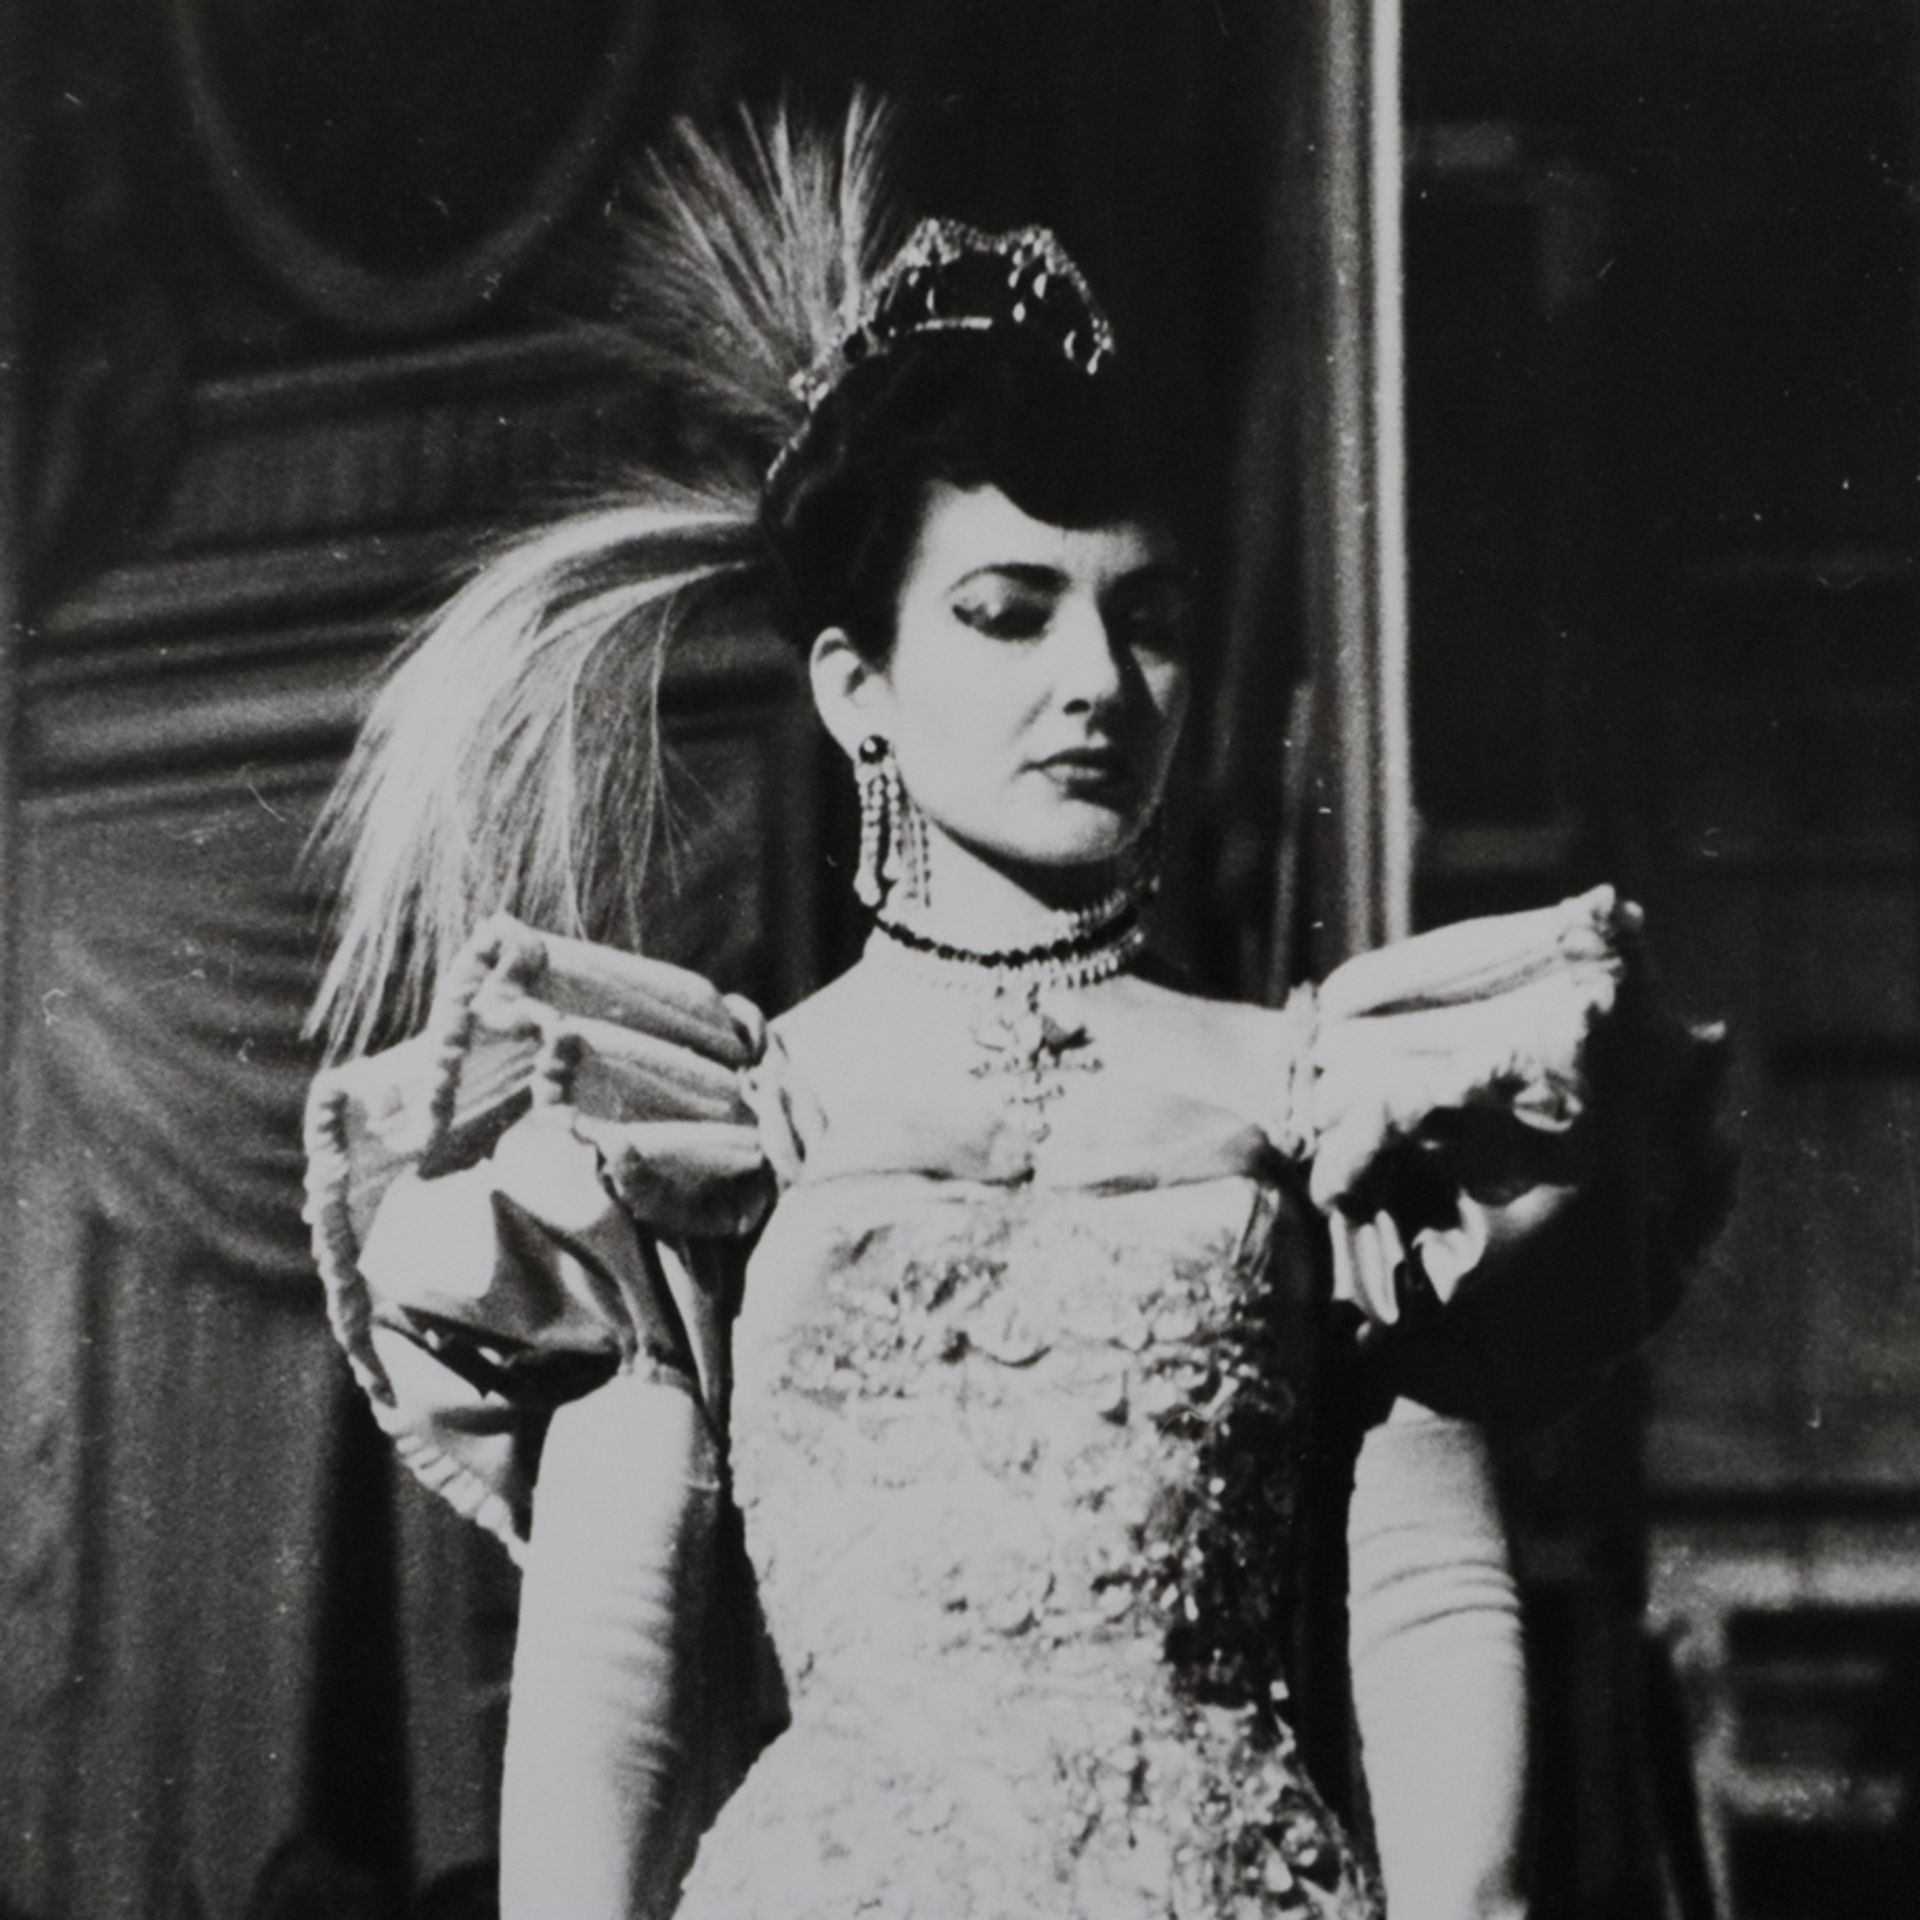 Konvolut: Drei Fotografien von Maria Callas - s/w Fotografien, verso handschriftlich bezeichnet "Lu - Image 4 of 7